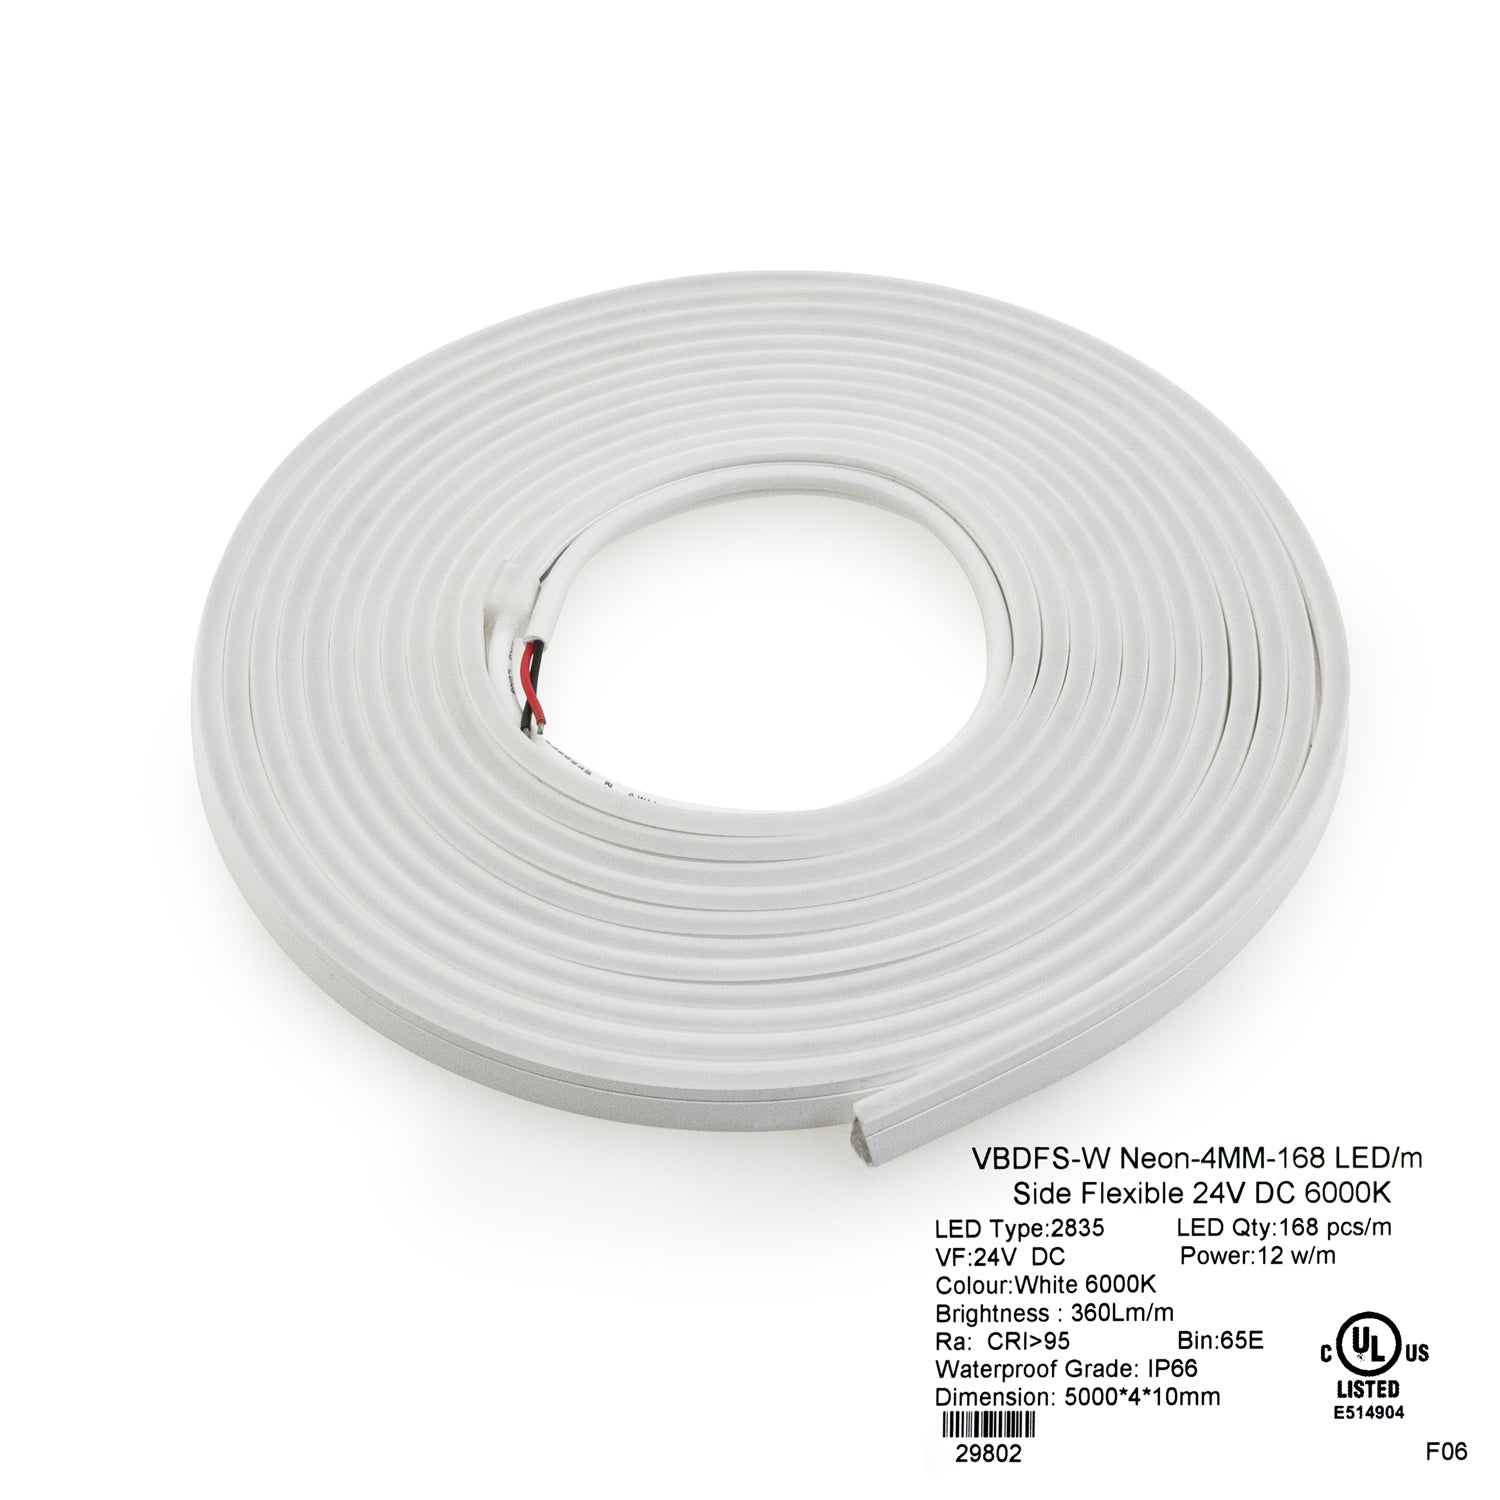 VBDFS-W Neon-4MM-168 LED/m Flexible Neon White LED Strip (5 Meter Roll/ 16.4ft), Veroboard 